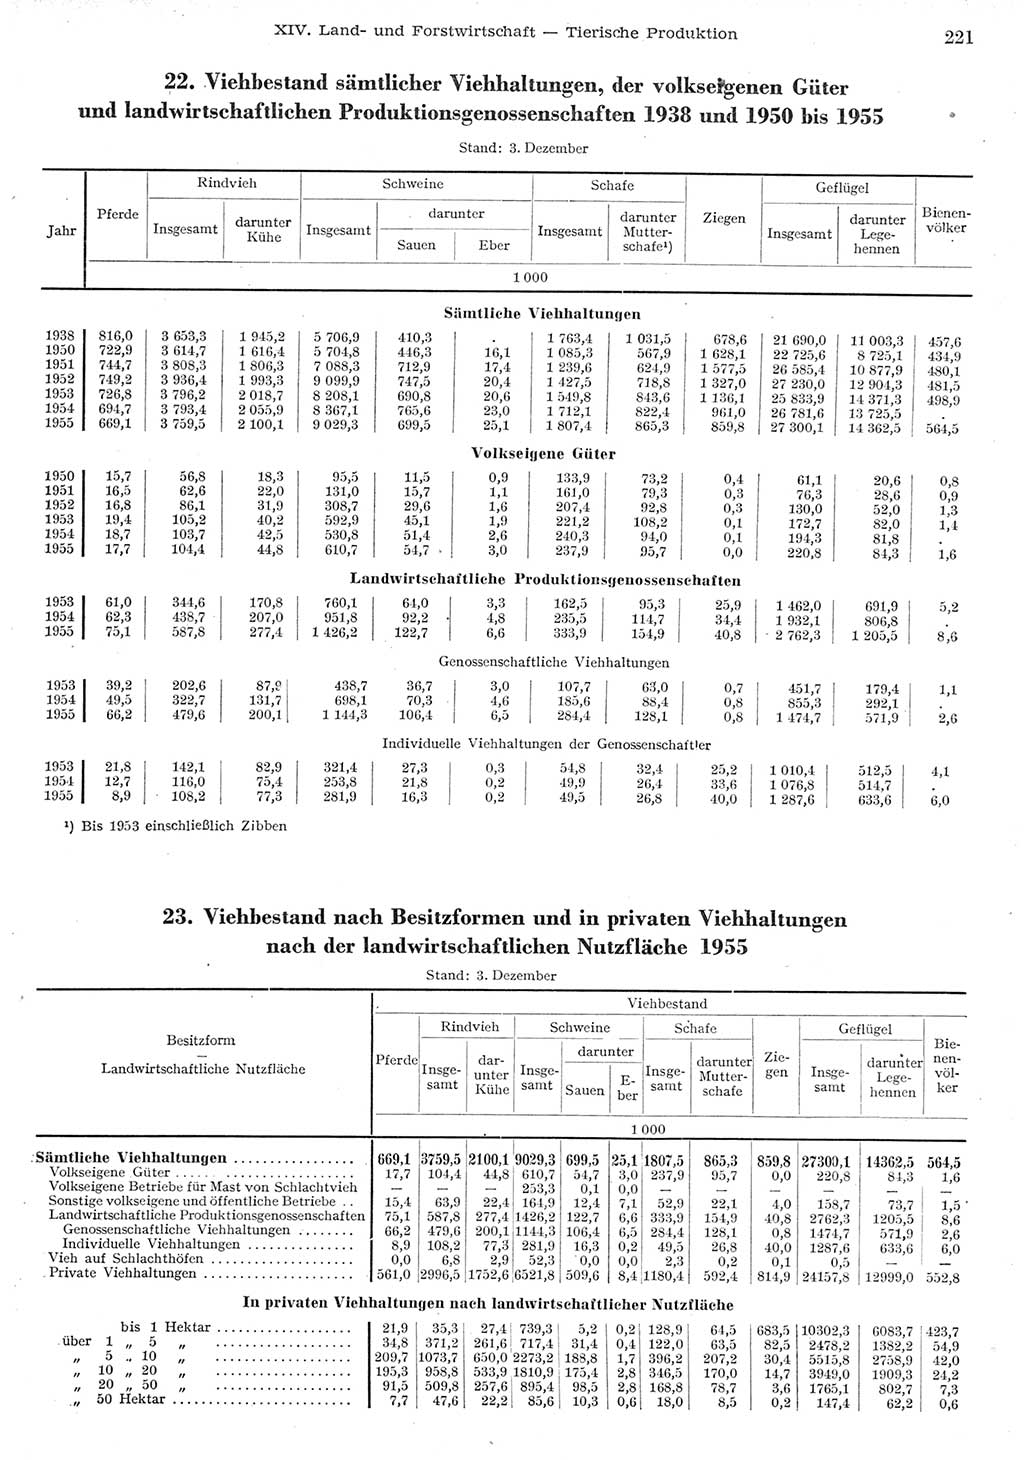 Statistisches Jahrbuch der Deutschen Demokratischen Republik (DDR) 1955, Seite 221 (Stat. Jb. DDR 1955, S. 221)